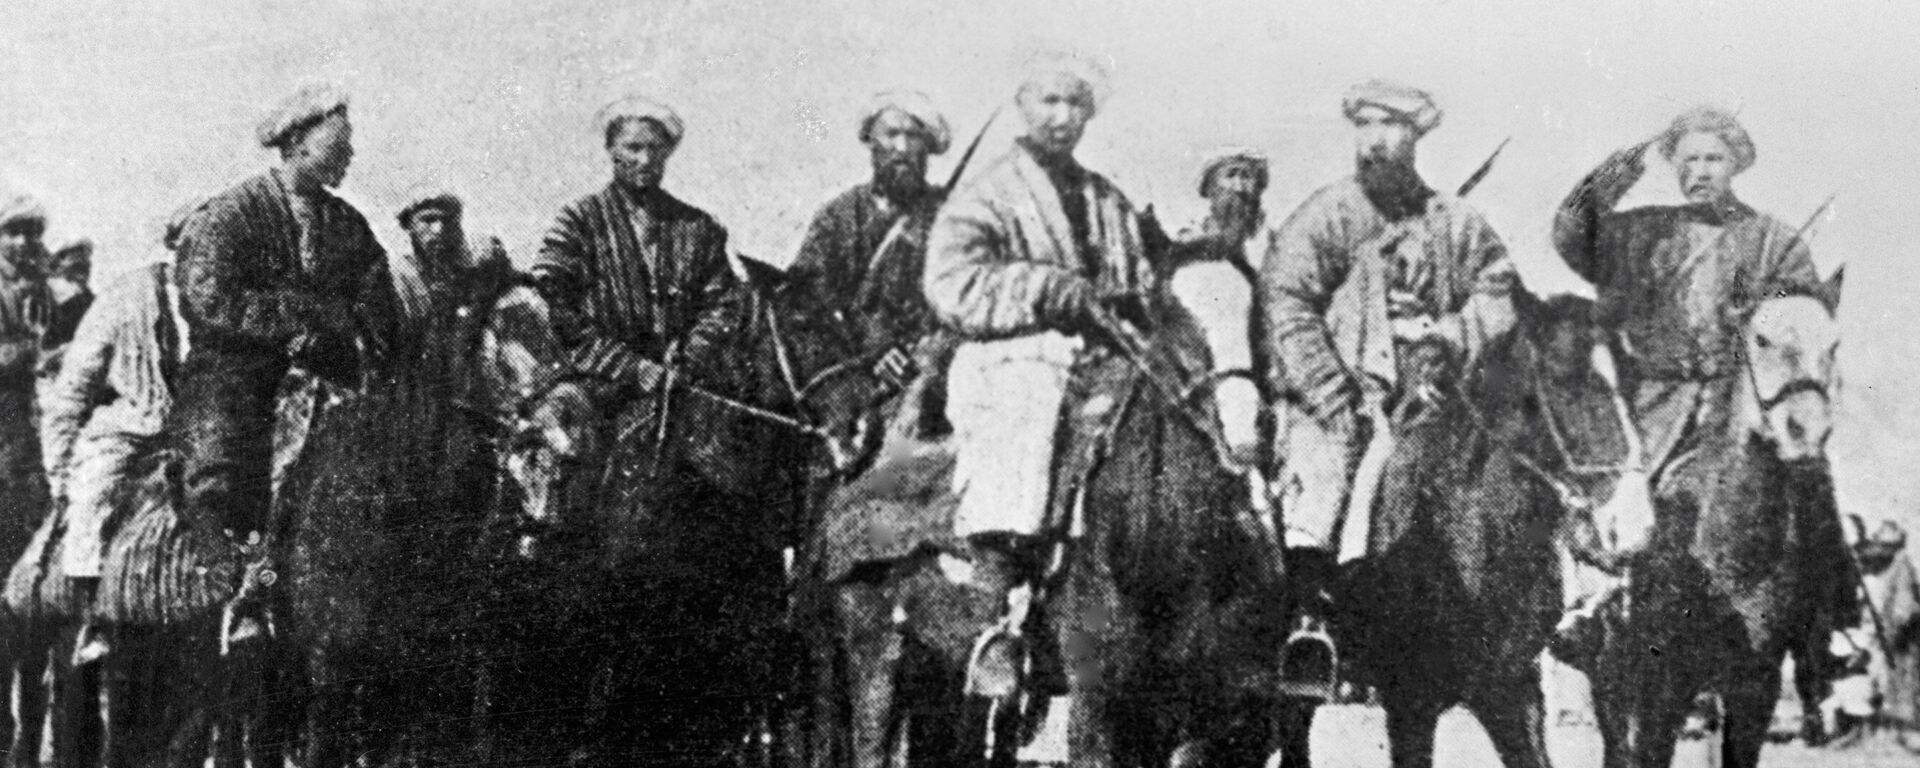 Отряд самообороны готовится отправиться в поход. - Sputnik Таджикистан, 1920, 28.05.2020